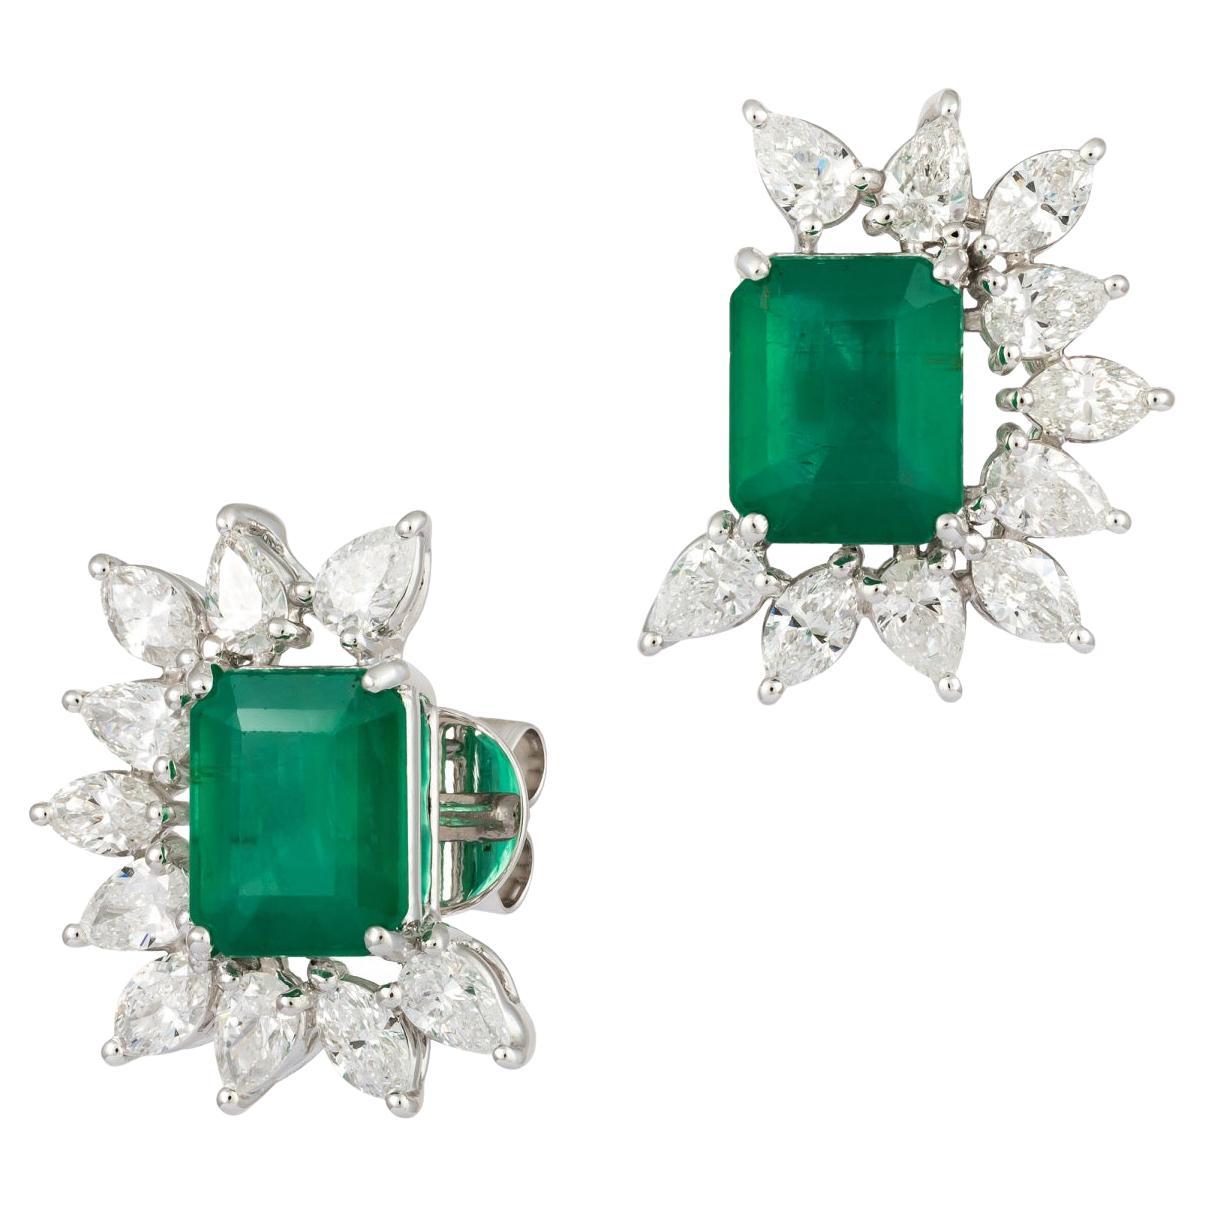 Original Emerald Diamond Elegant White 18K Gold Earrings Stud for Her